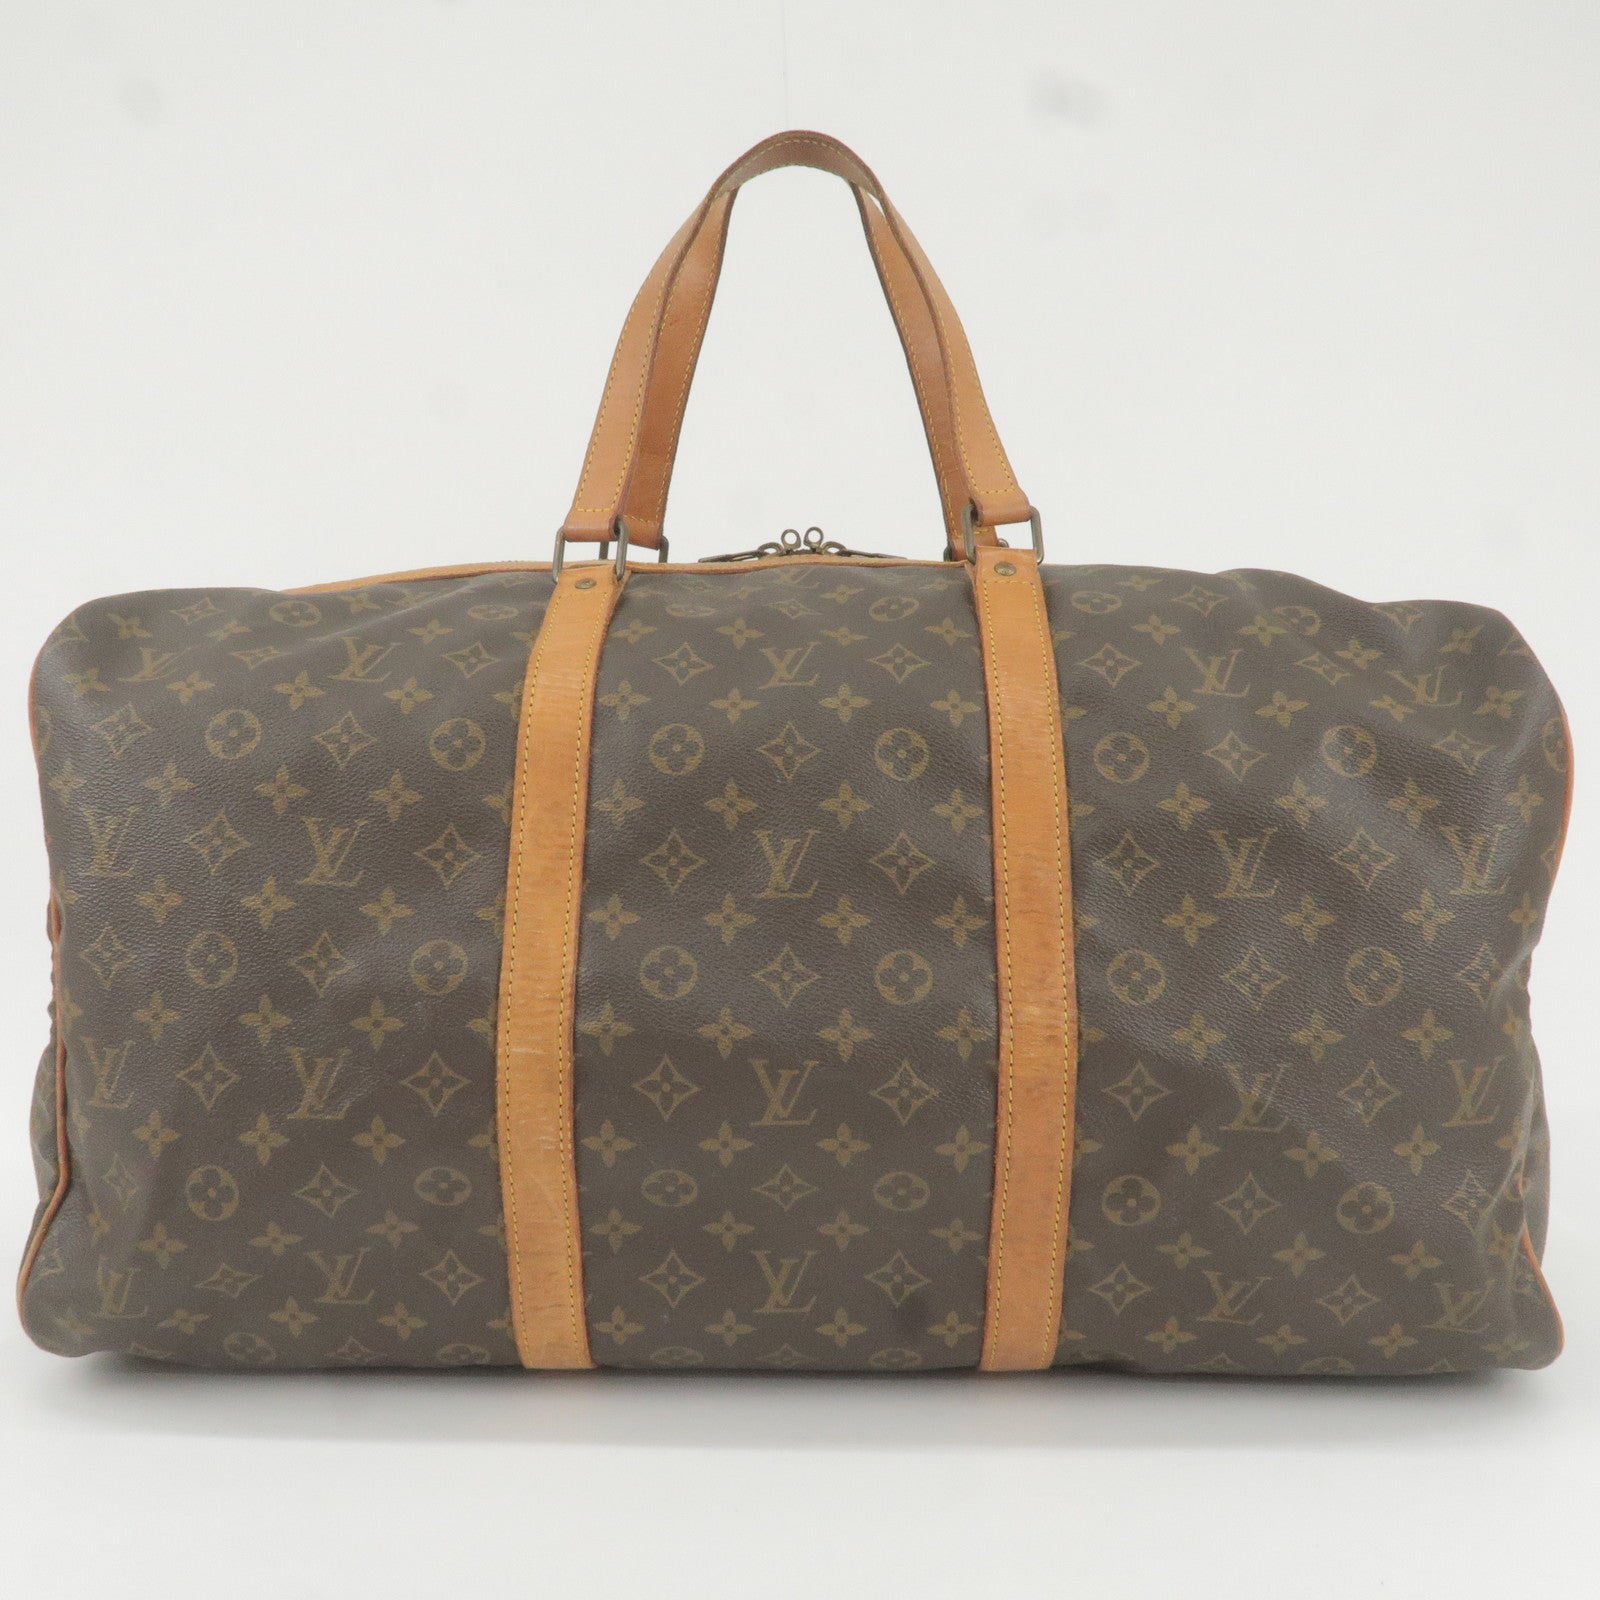 Louis Vuitton, Bags, Authentic Louis Vuitton Shopping Sac Souple 55